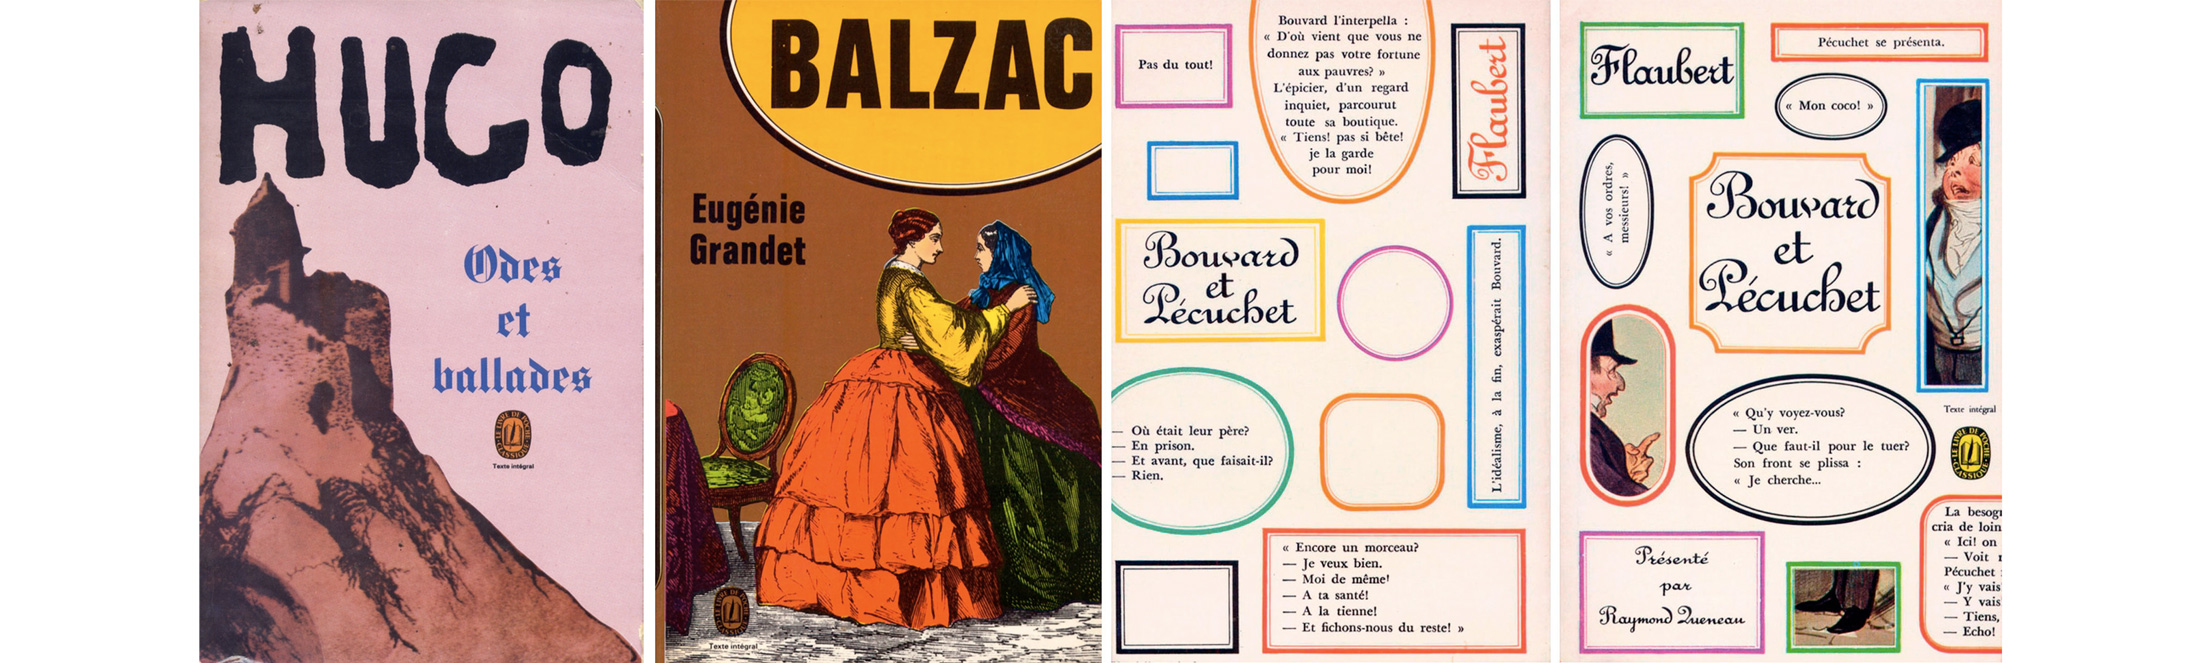 Pierre Faucheux couvertures Livre de Poche Bouvard et Pecuchet Flaubert 1966 Eugenie Grandet Balzac 1972 Victor Hugo Odes et ballades 1969